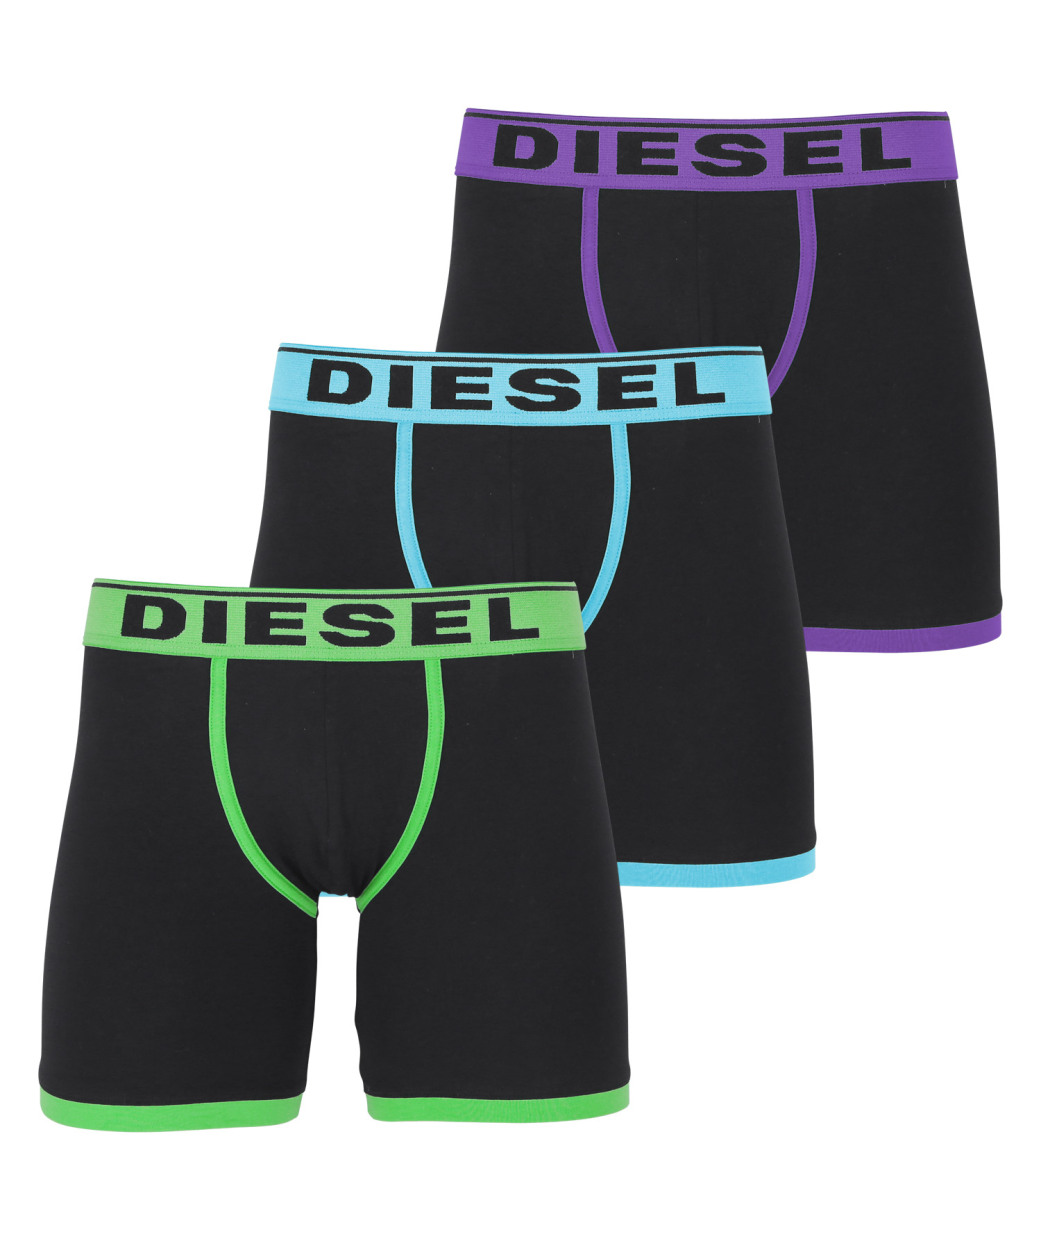 ディーゼル DIESEL ロングボクサーパンツ 3枚セット メンズ アンダーウェア 男性 下着 綿混 コットン ブランド ロゴ プレゼント ギフト